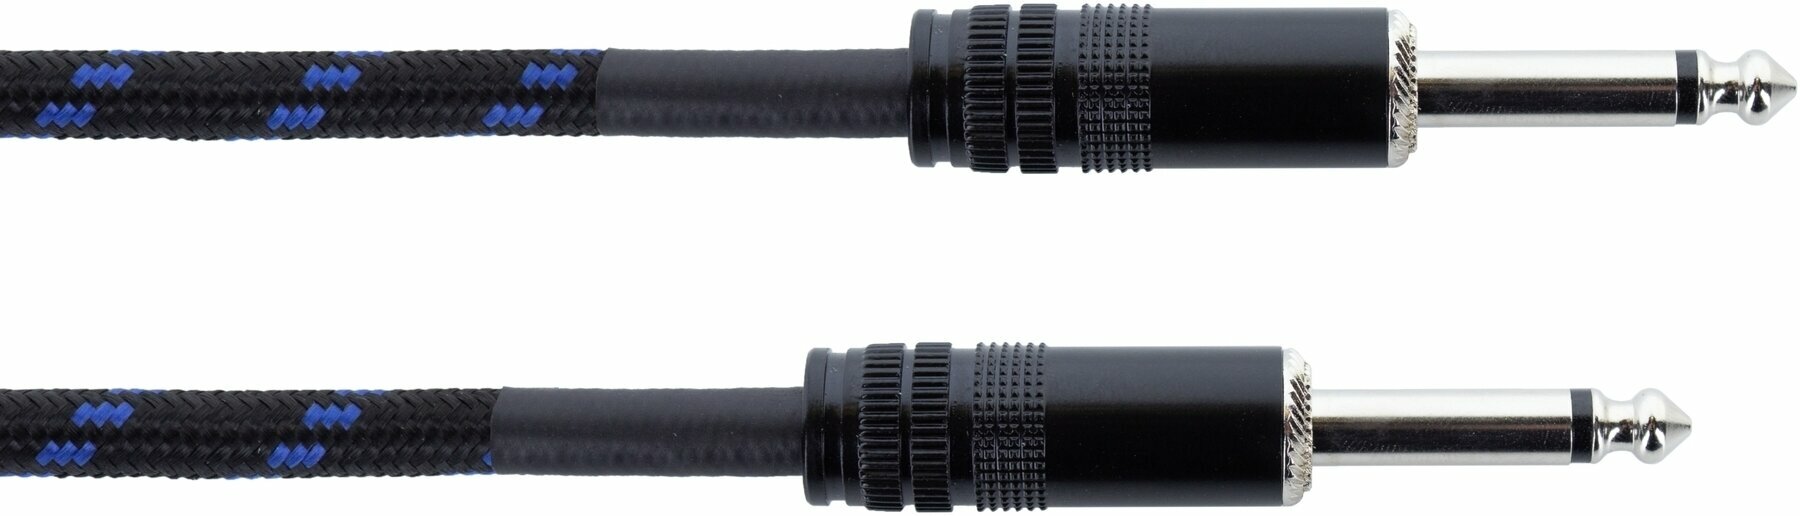 Nástrojový kabel Cordial EI 7,5 PP-TWEED-BL Modrá 7,5 m Rovný - Rovný